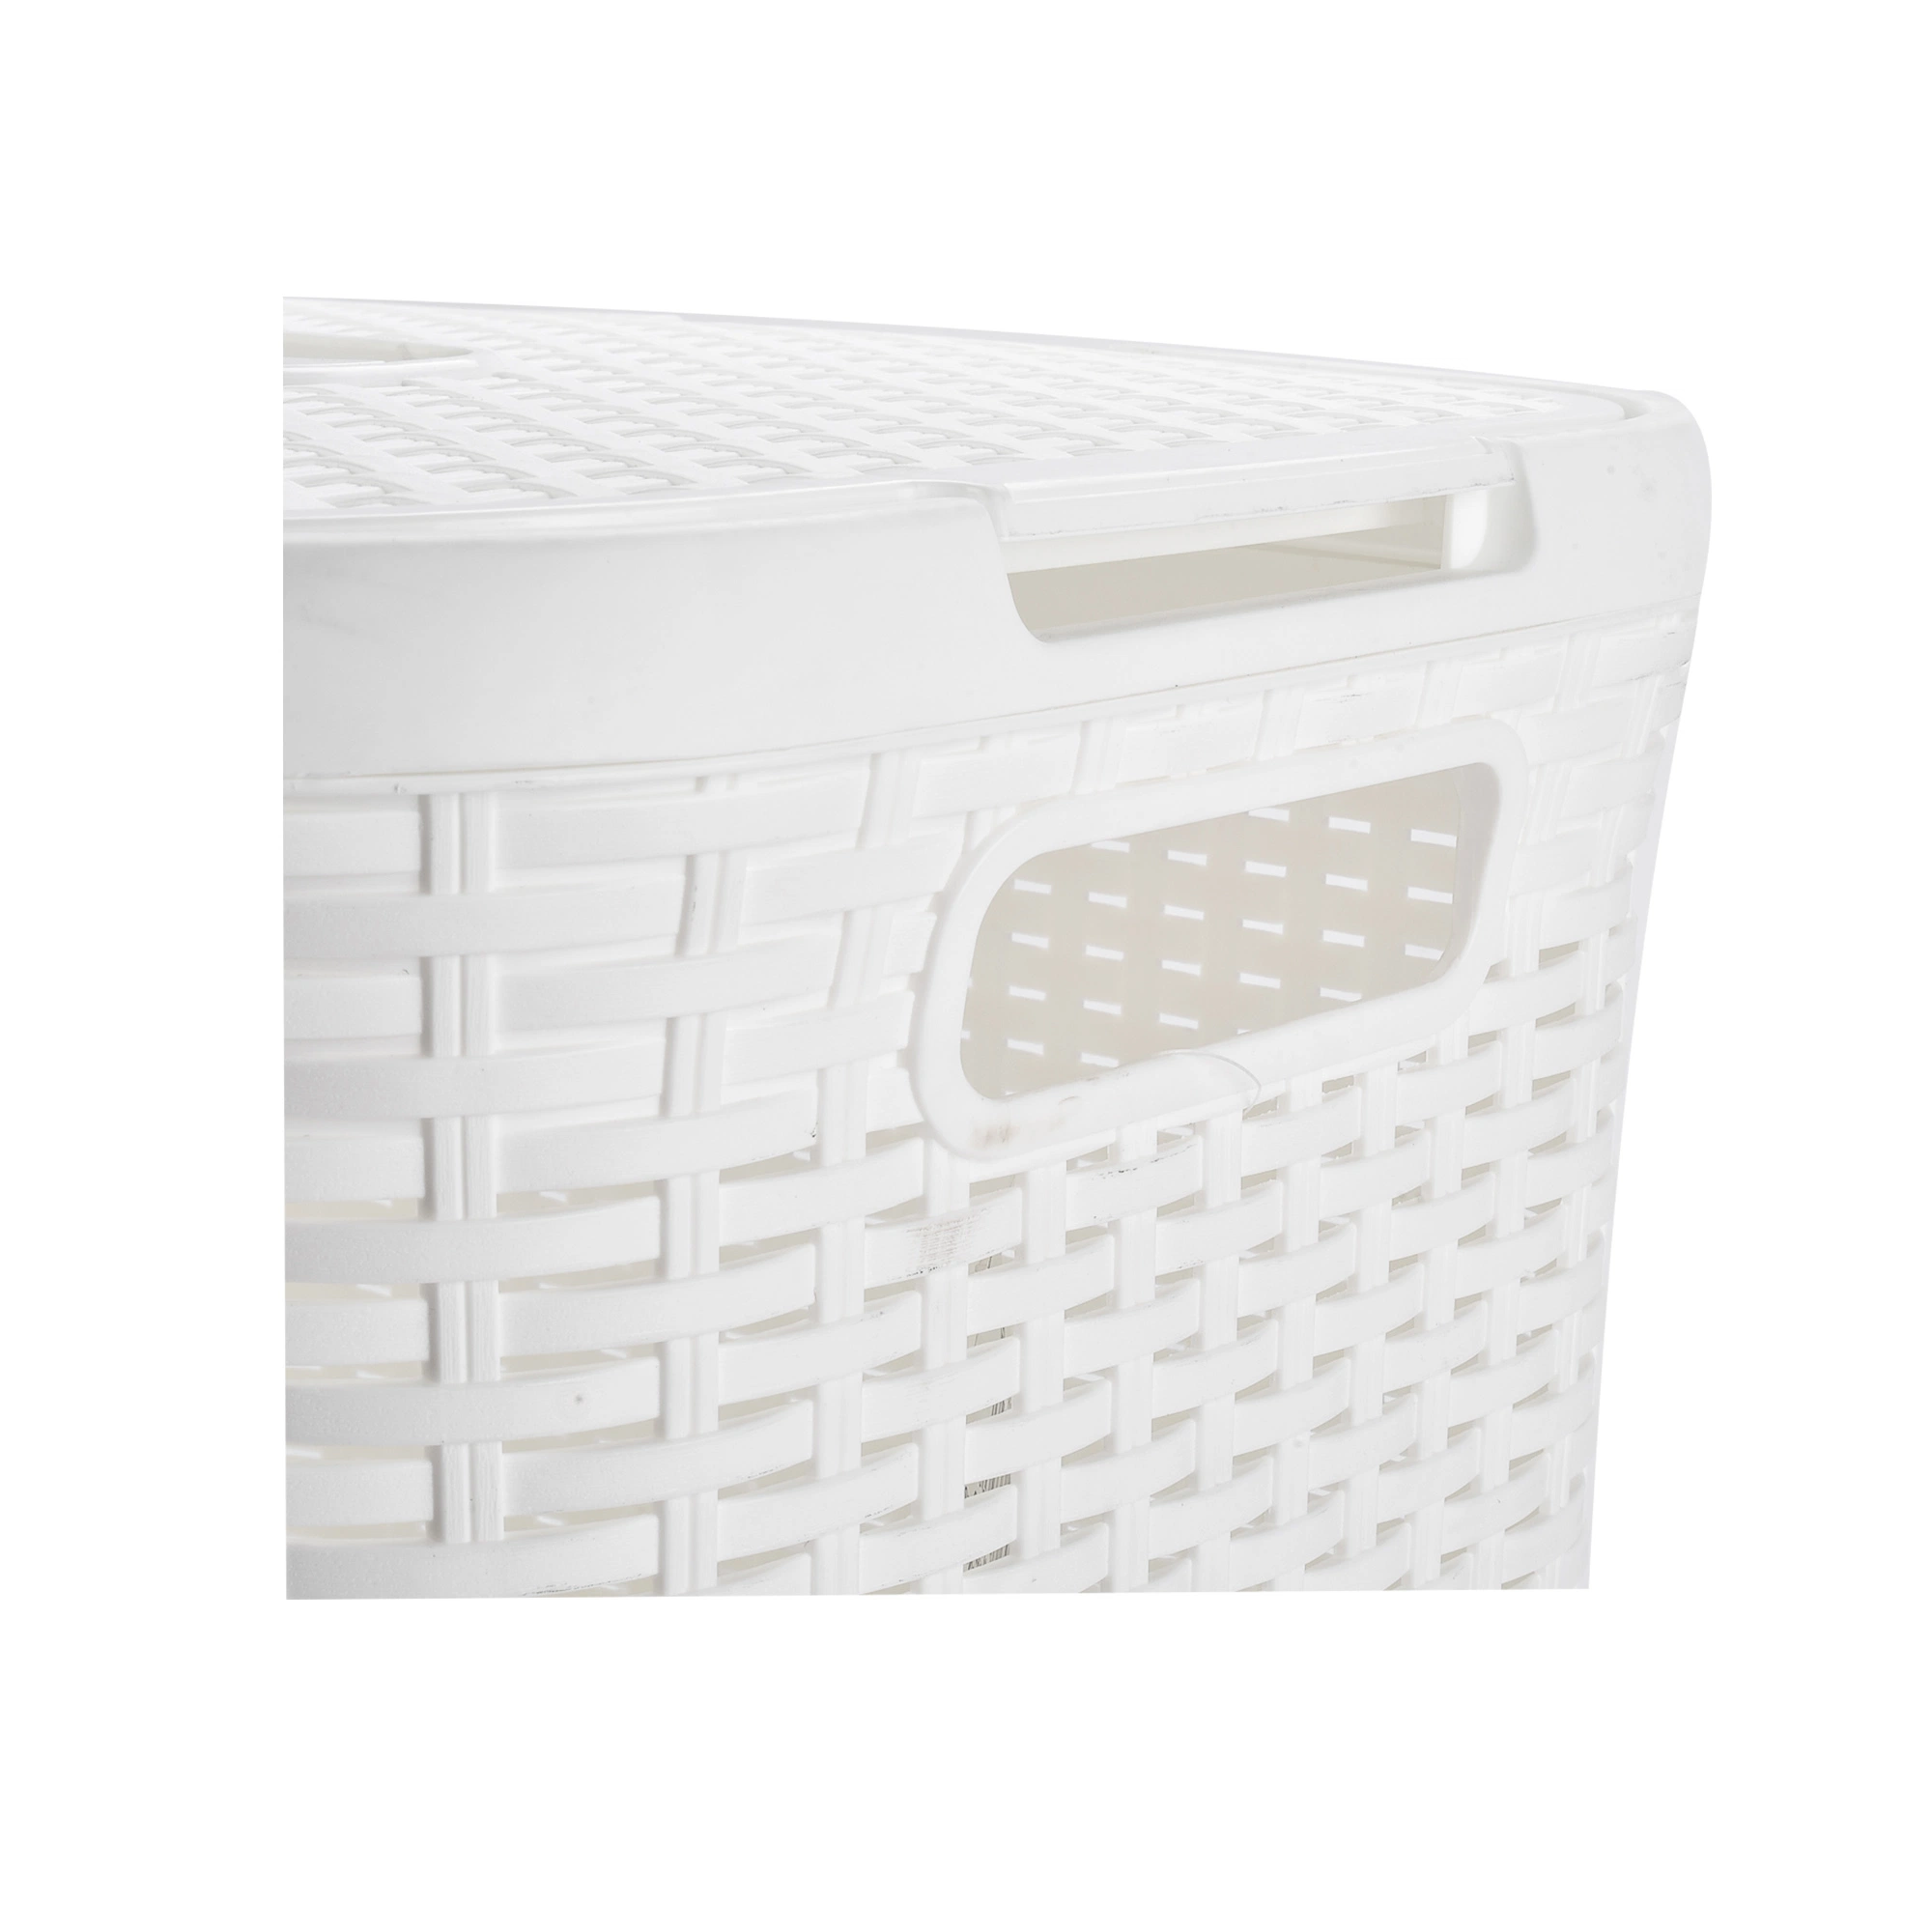 Grande capacidade da cesta de Lavandaria de plástico cor branca